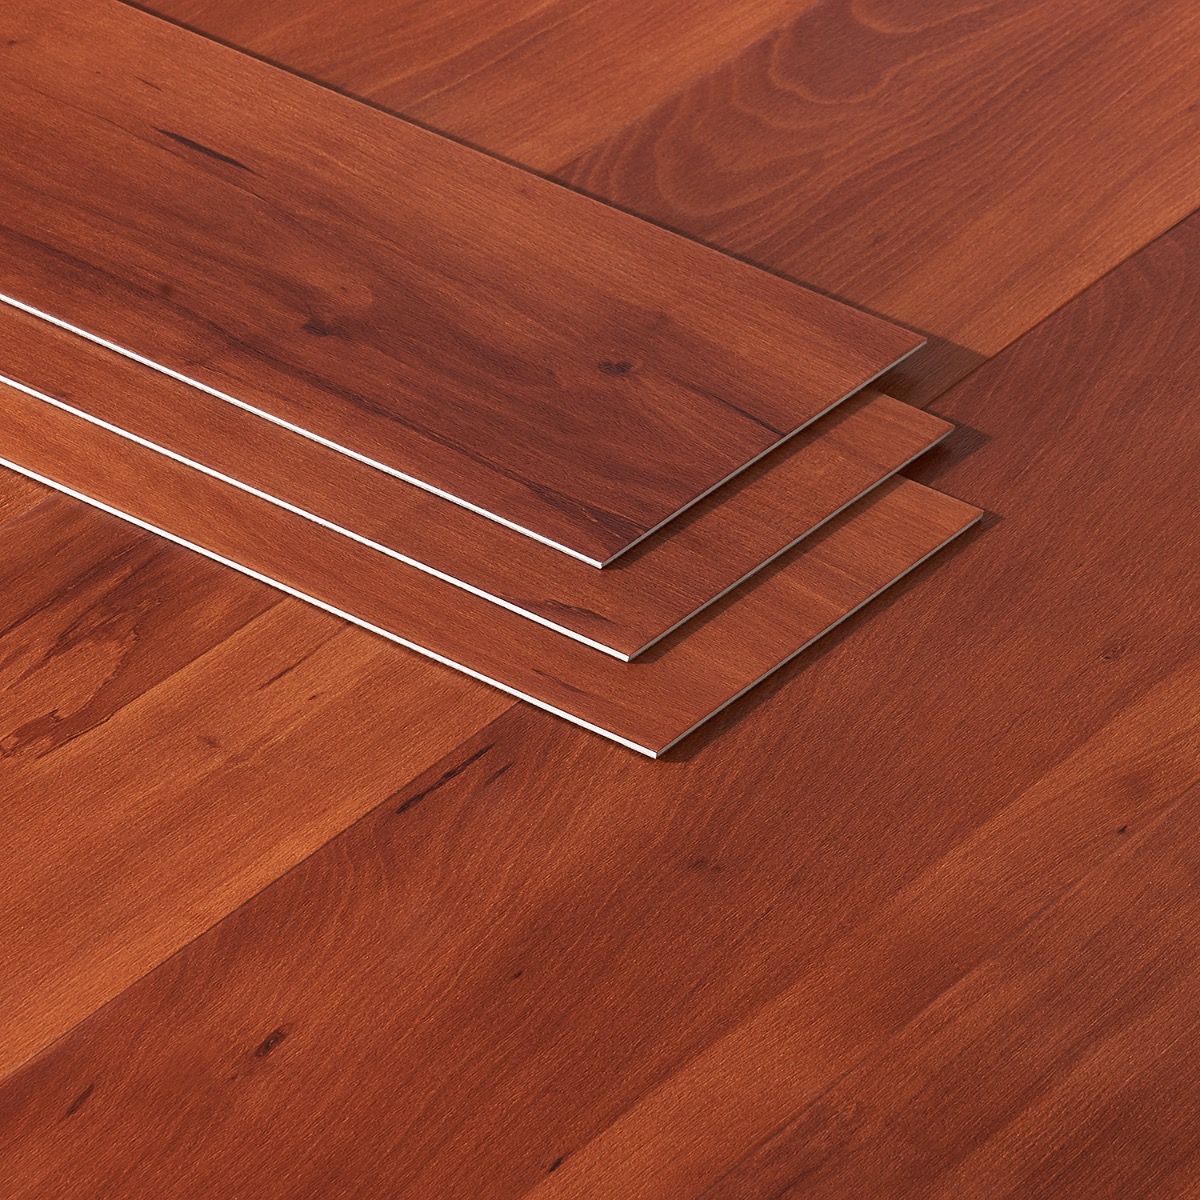 Waterproof Luxury Vinyl Plank Flooring, Waterproof Vinyl Flooring That Looks Like Ceramic Tile